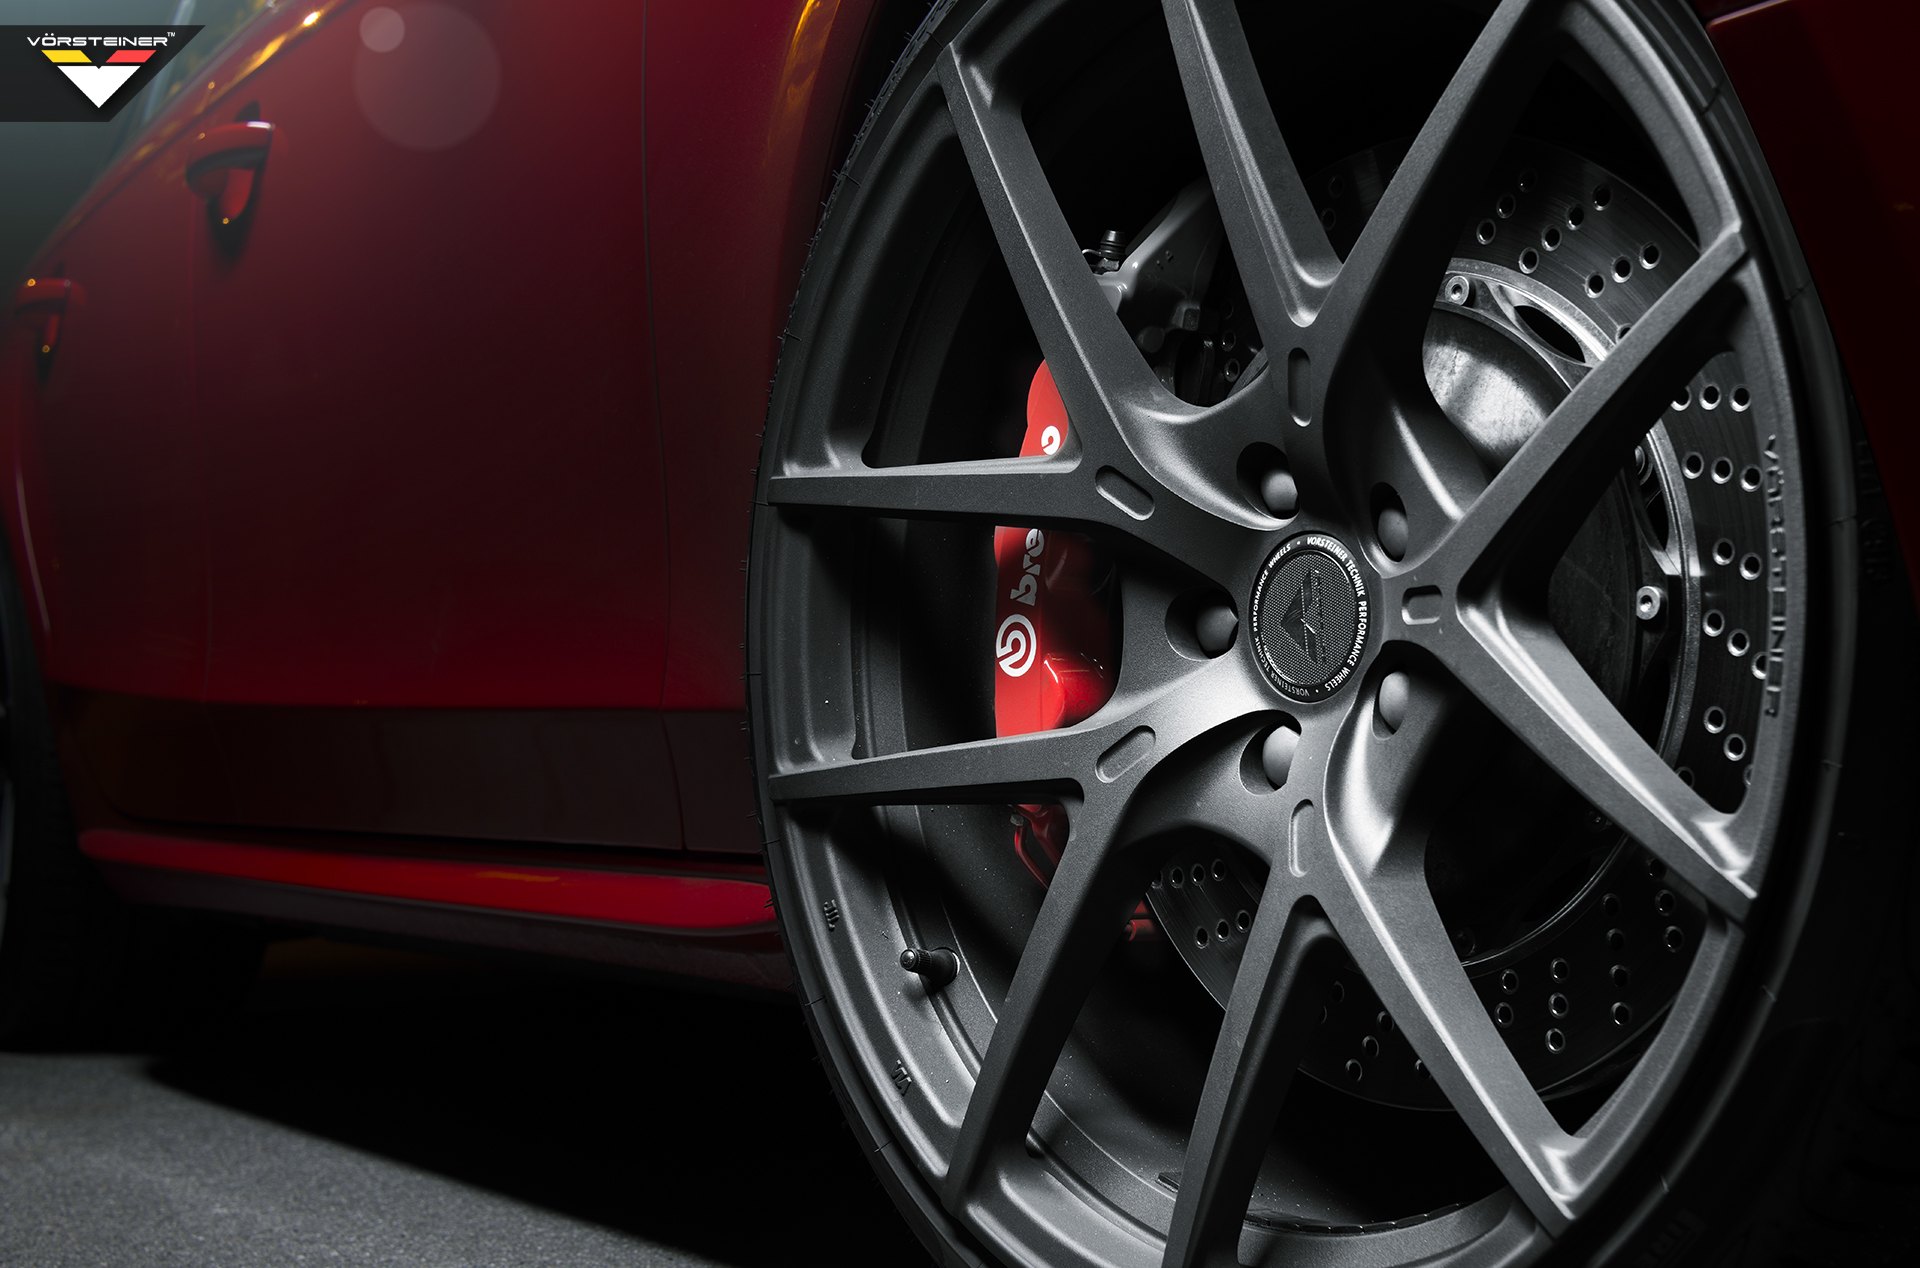 20 Inch Forged Vorsteiner Wheels on Red Audi S4 - Photo by Vorstiner